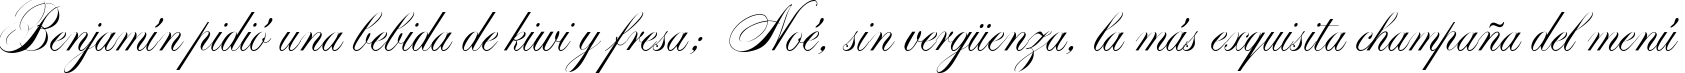 Пример написания шрифтом Markiz de Sad script текста на испанском